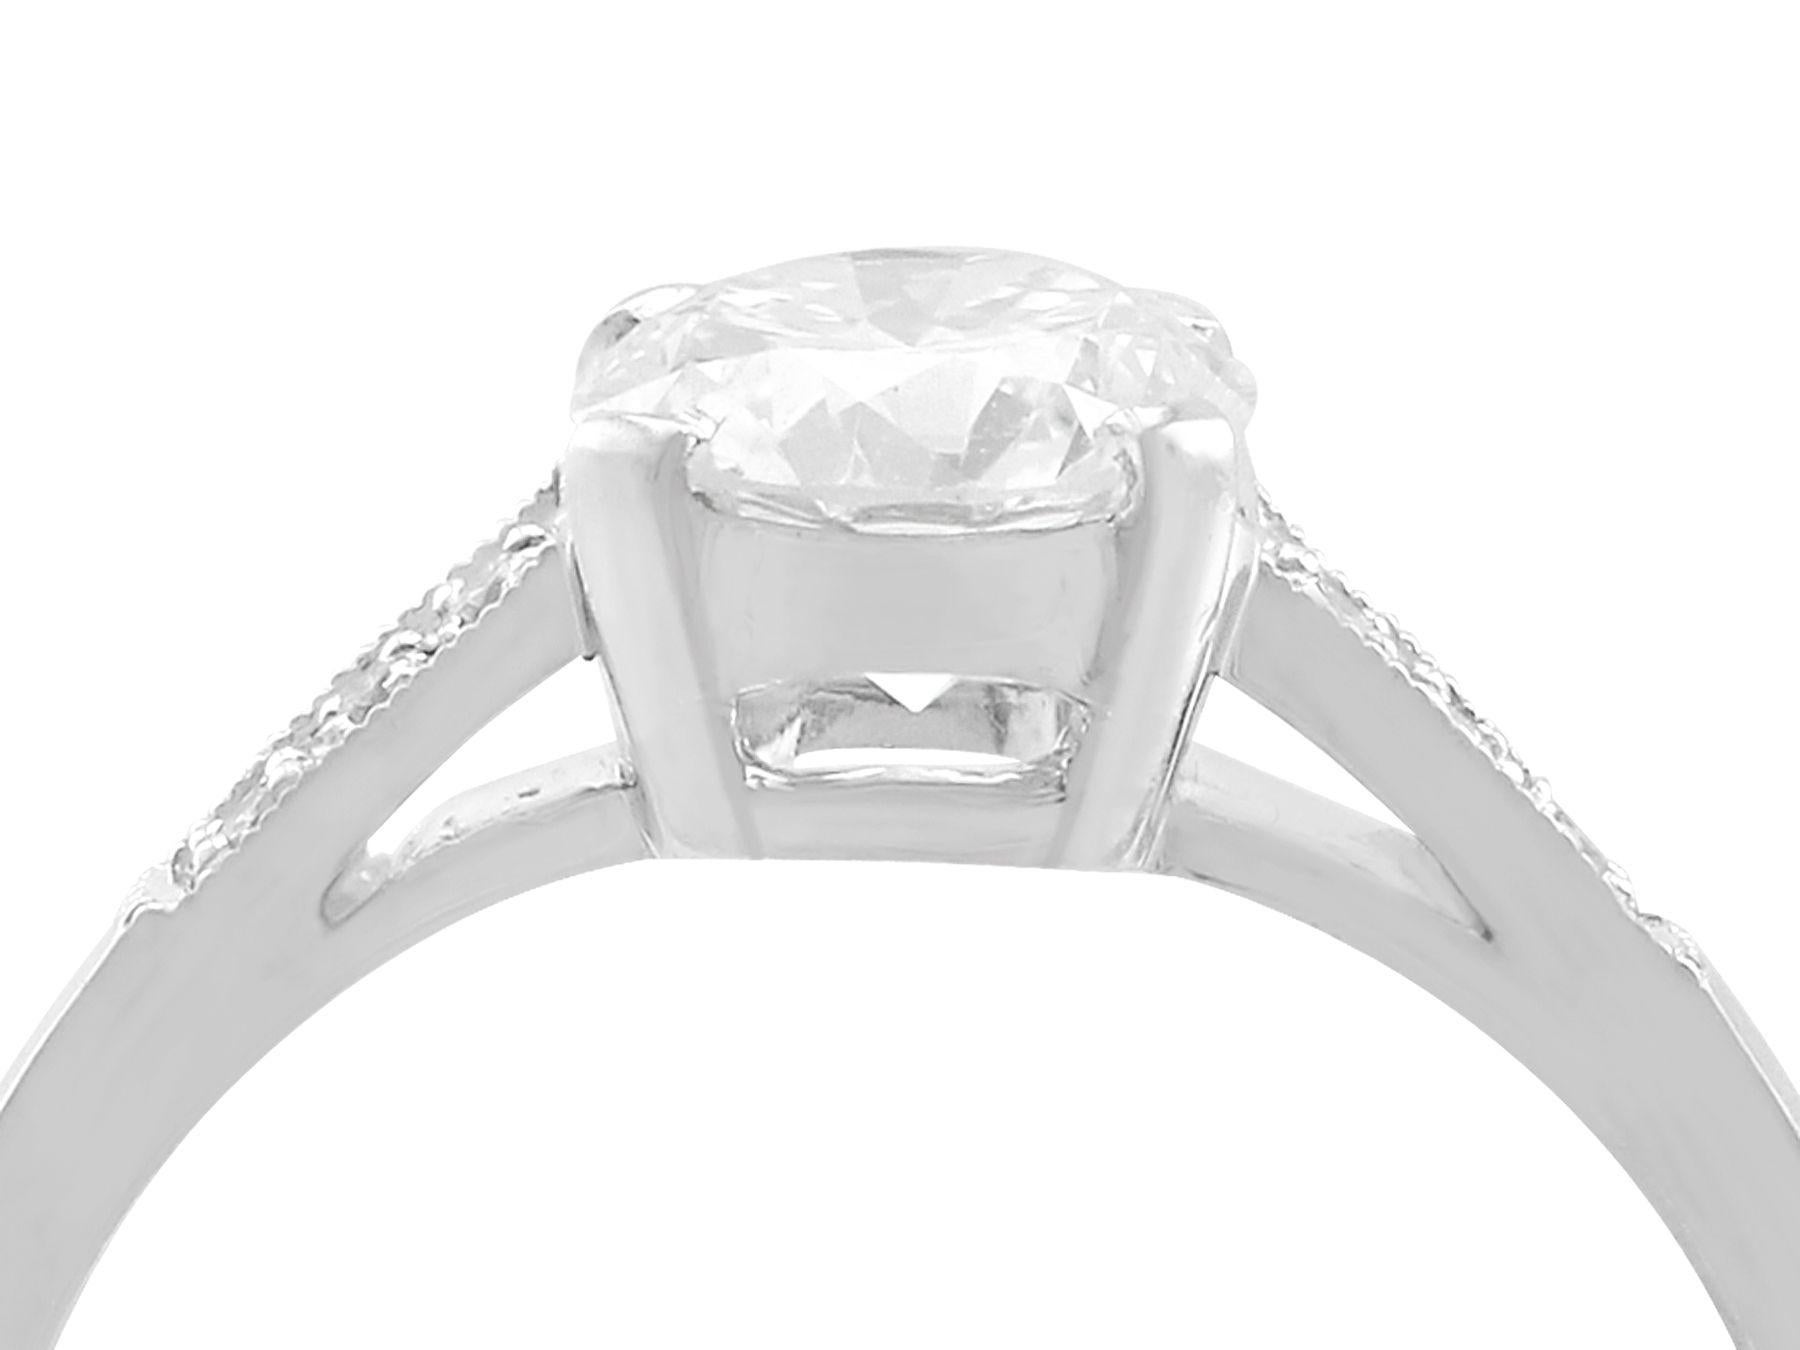 Ein atemberaubender, feiner und beeindruckender Vintage-Ring mit einem Diamanten von 1,02 Karat (insgesamt) und einem zeitgenössischen Solitärring aus Platin; Teil unserer Diamantschmuck-/Erbschmuck-Kollektionen.

Dieser feine und beeindruckende